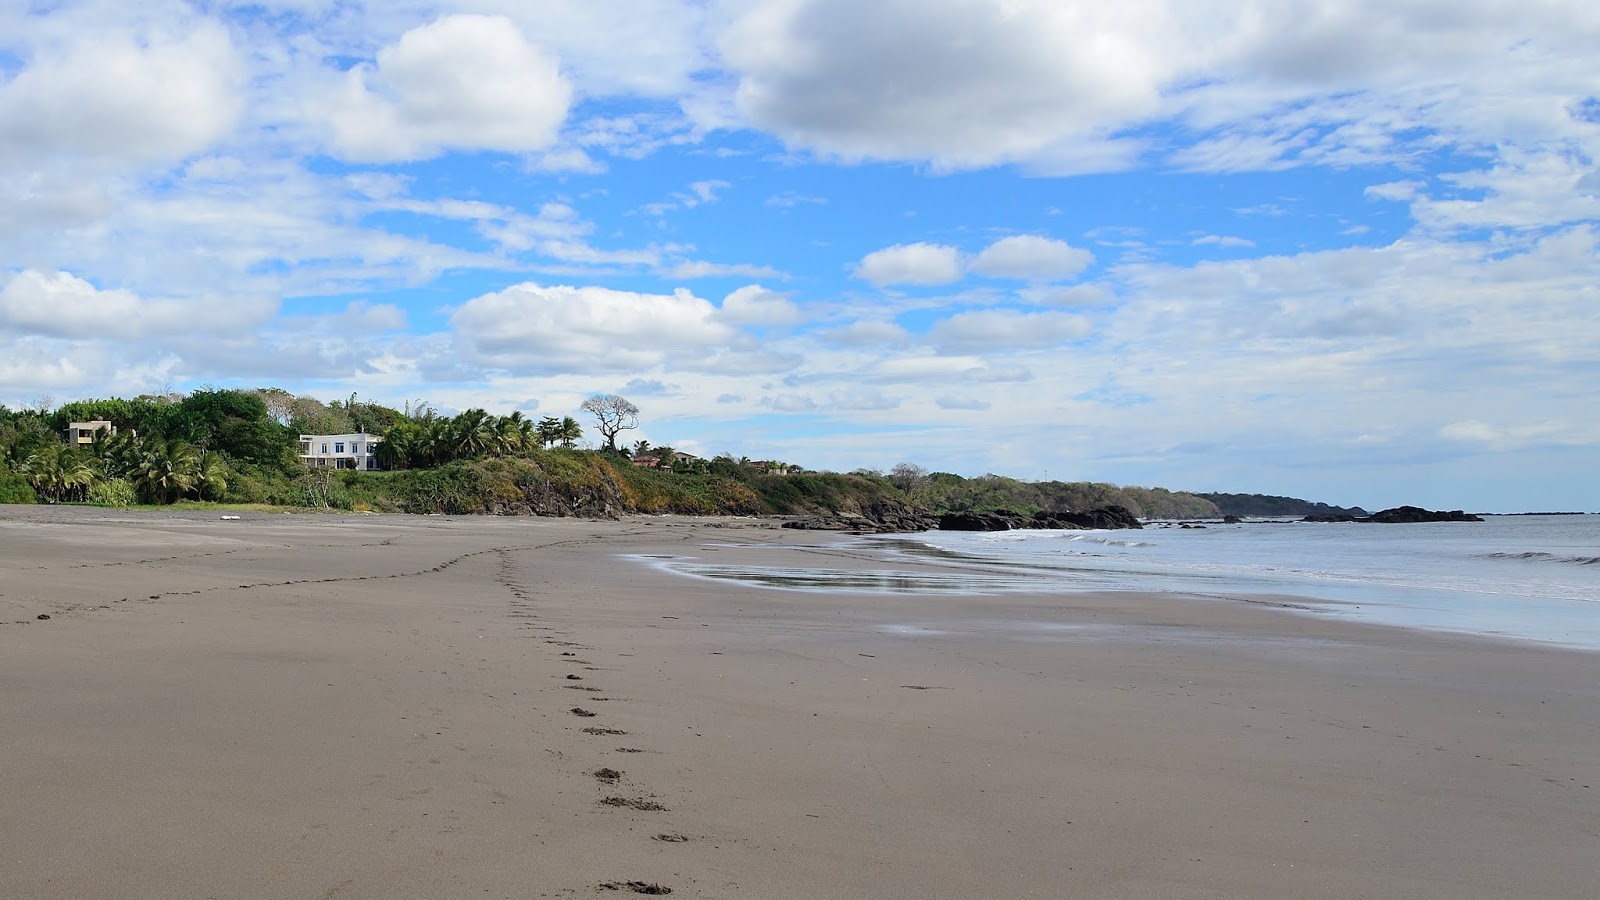 Zdjęcie Playa Azul z powierzchnią piasek z kamieniami